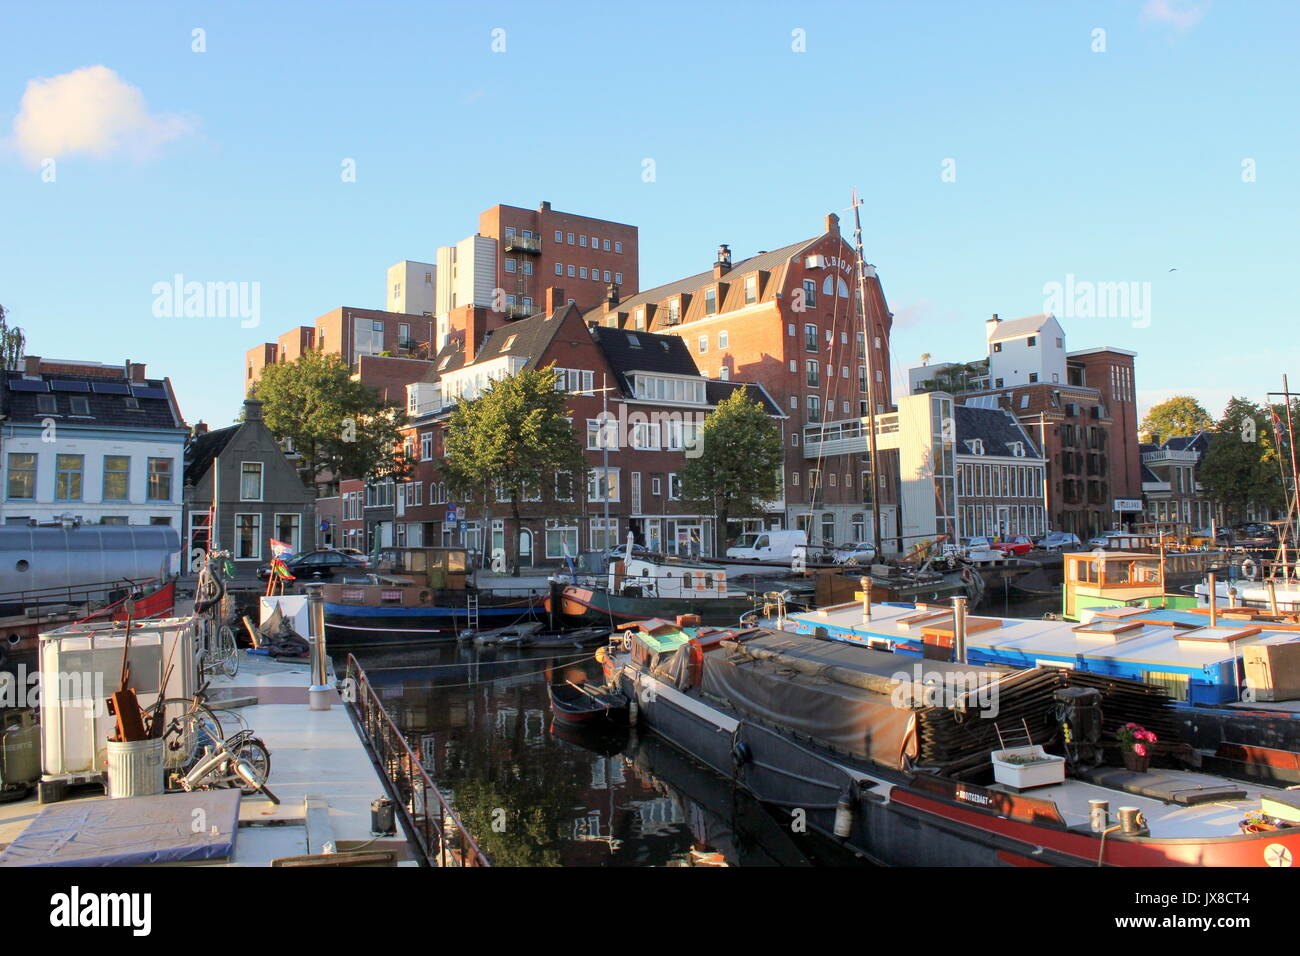 Complexe d'ancien entrepôt à Albion Noorderhaven canal dans Groningen, Pays-Bas. Vieux voiliers et bateaux amarrés devant. Banque D'Images